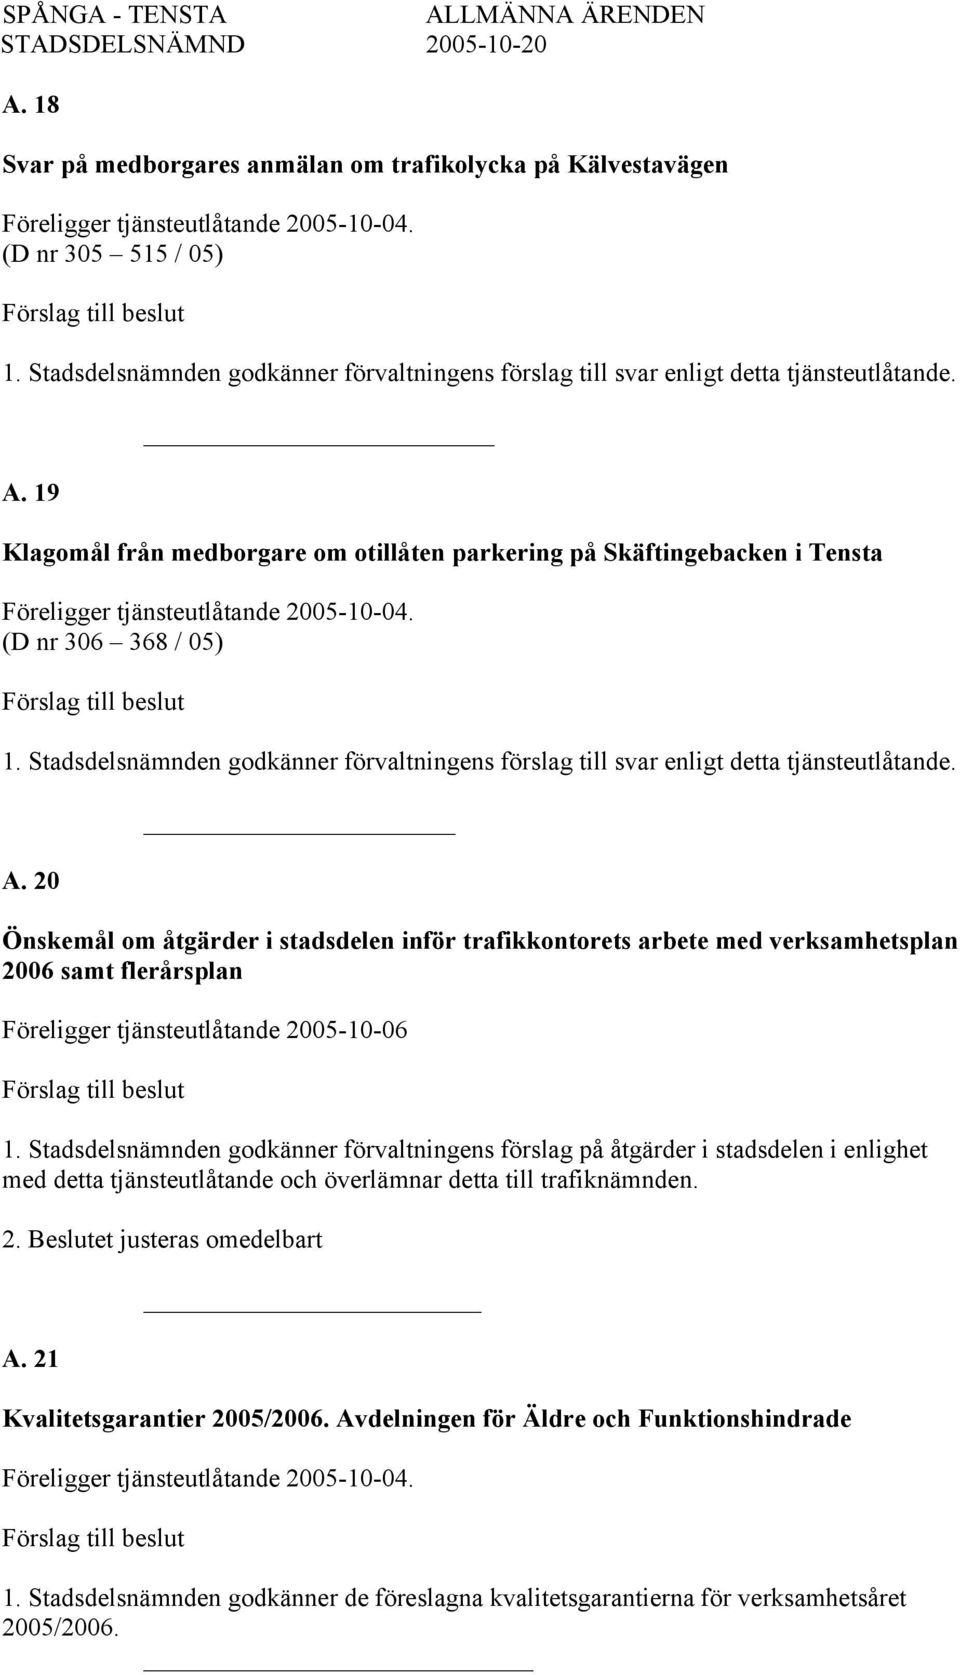 20 Önskemål om åtgärder i stadsdelen inför trafikkontorets arbete med verksamhetsplan 2006 samt flerårsplan Föreligger tjänsteutlåtande 2005-10-06 1.